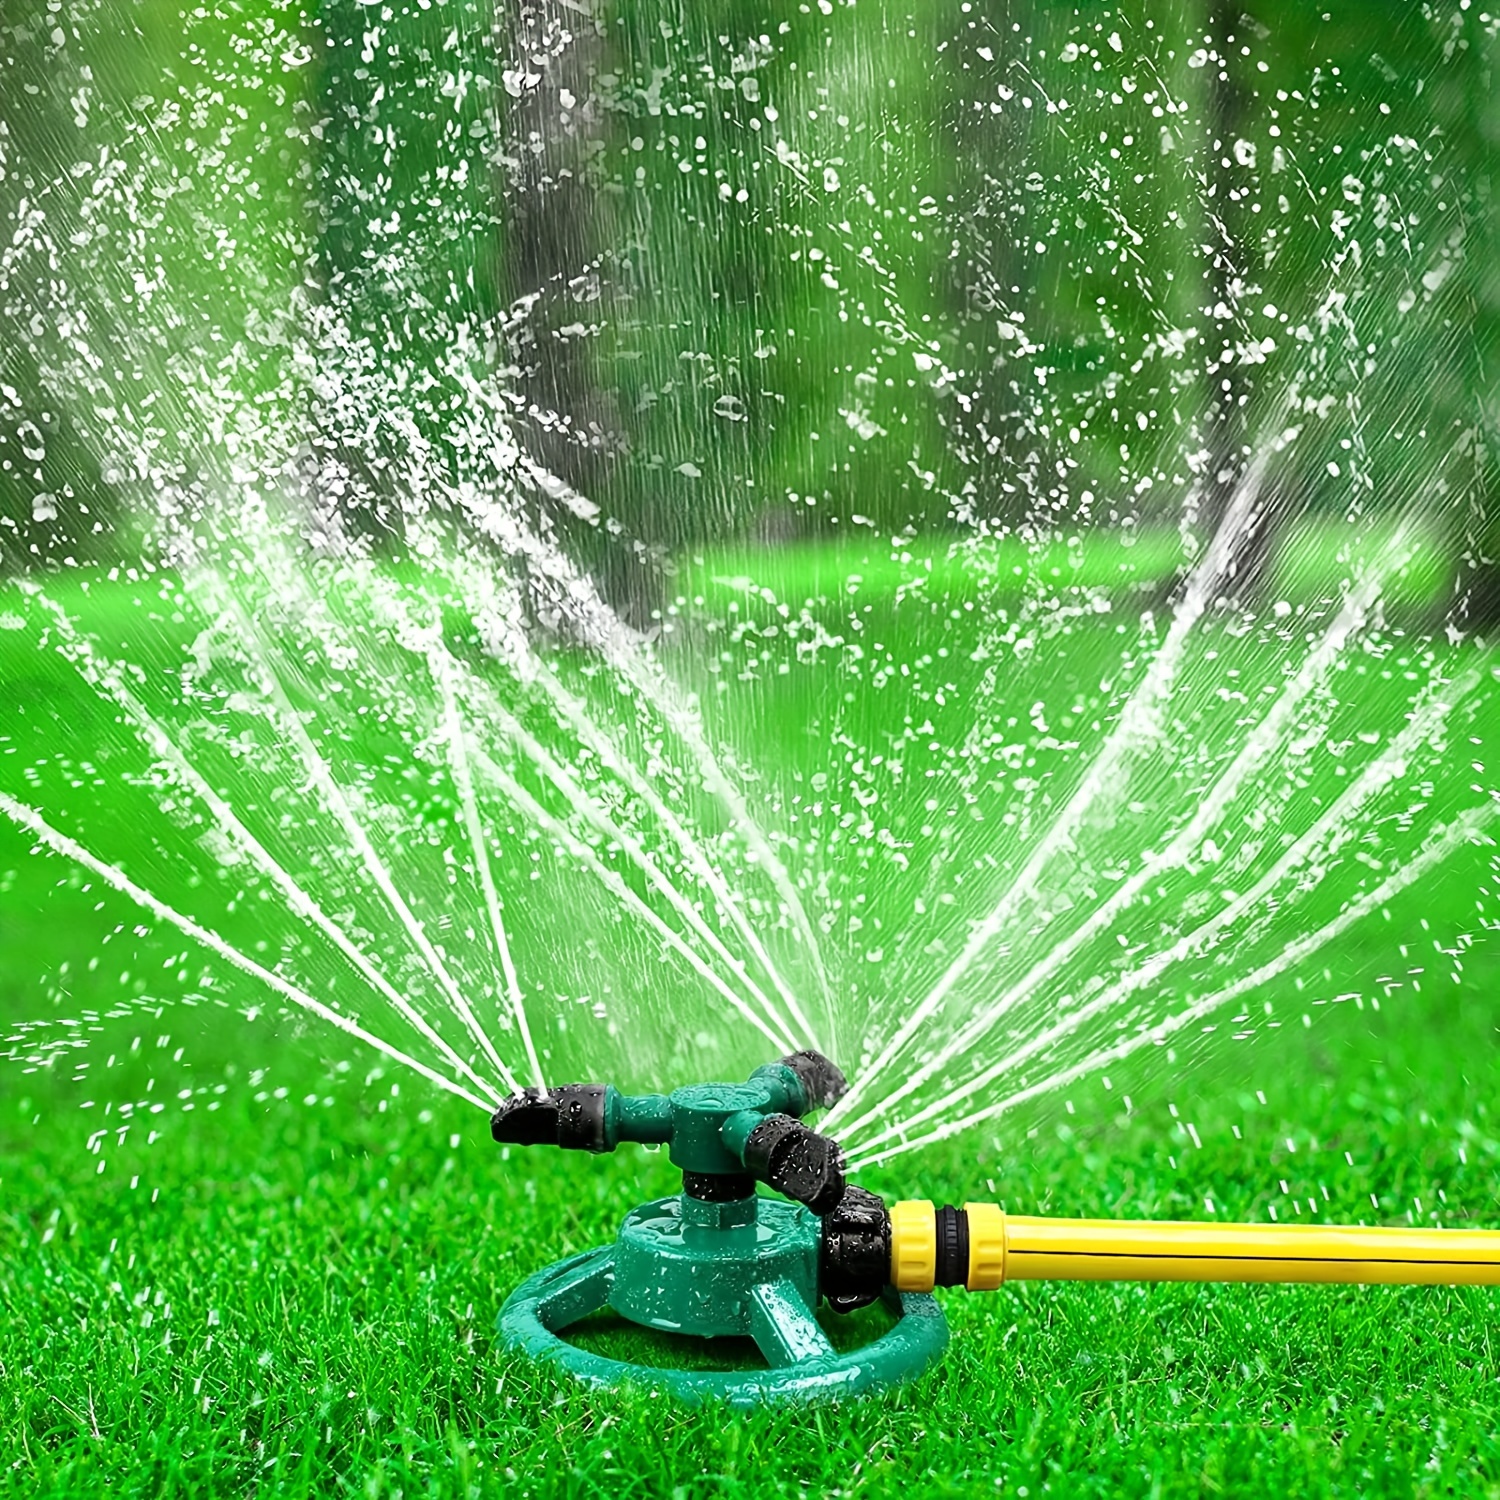 

1 Set, Garden Sprinkler, Adjustable 360 Degree Rotation Lawn Sprinkler, Large Area Coverage, Multipurpose Yard Sprinklers For Plant Irrigation